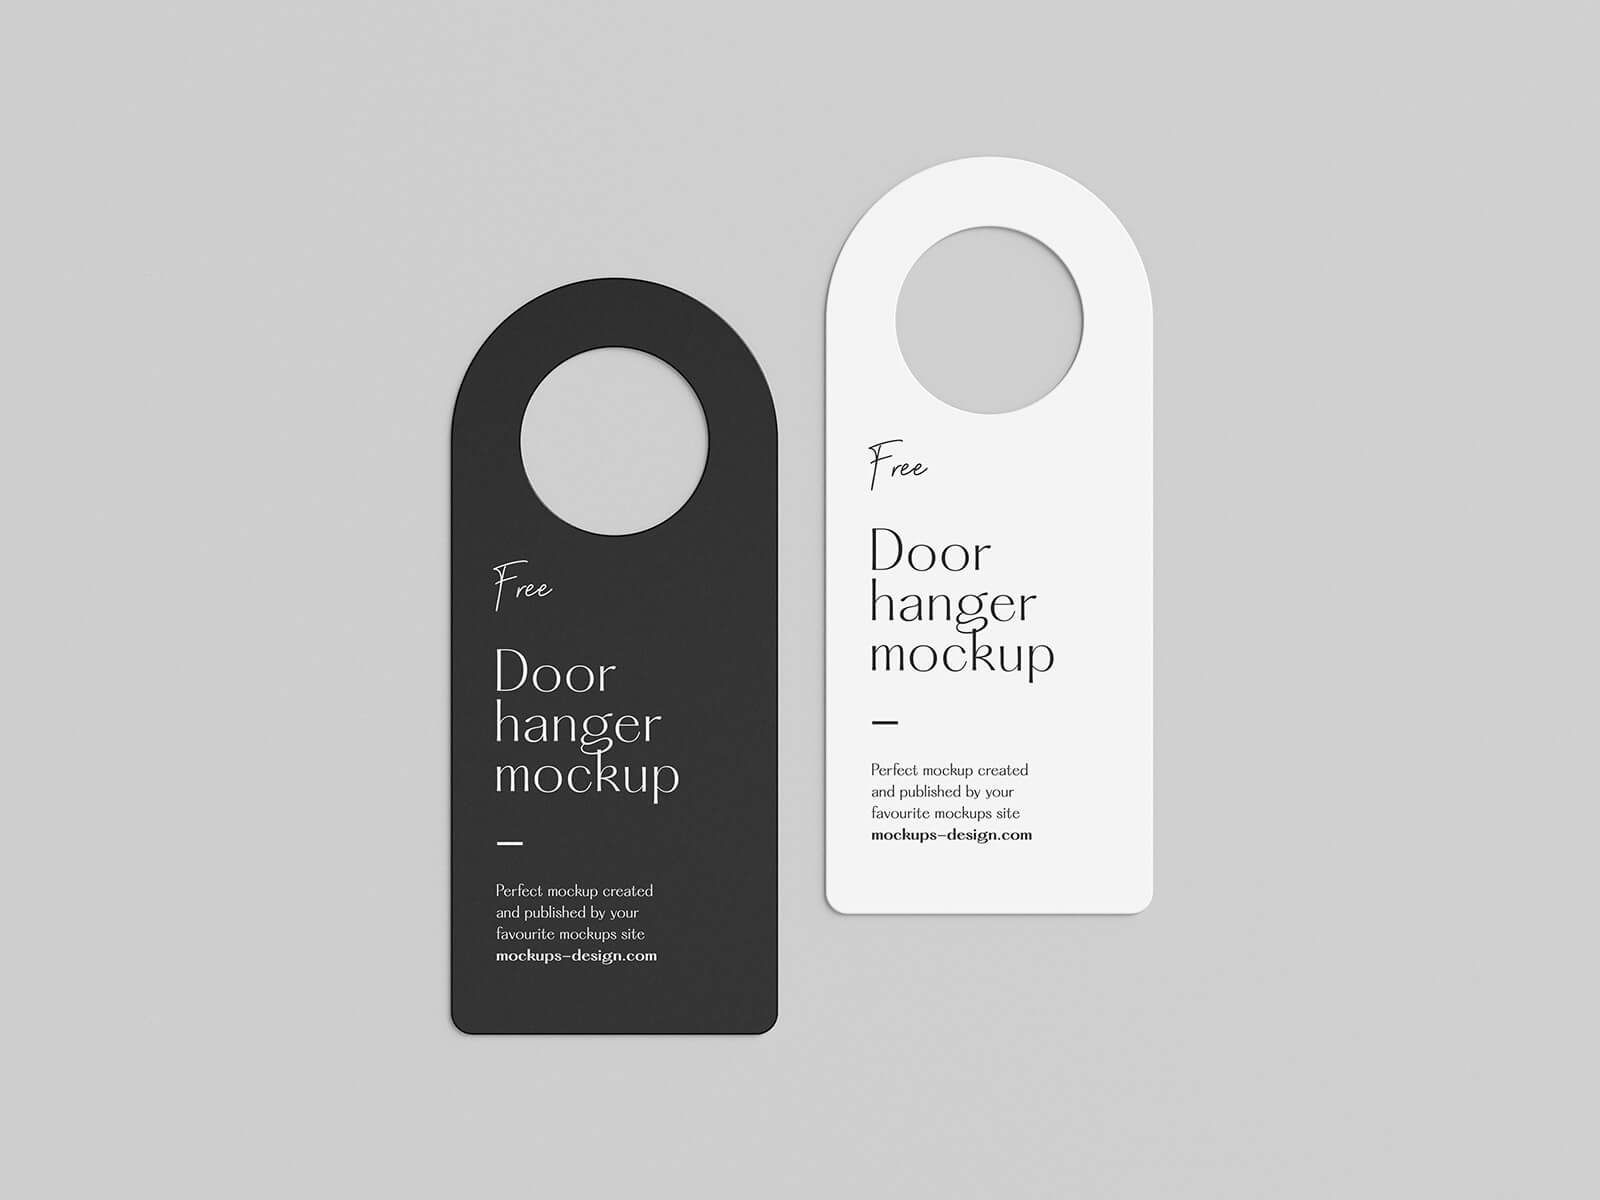 5 Free Door Hanger Mockup PSD Files